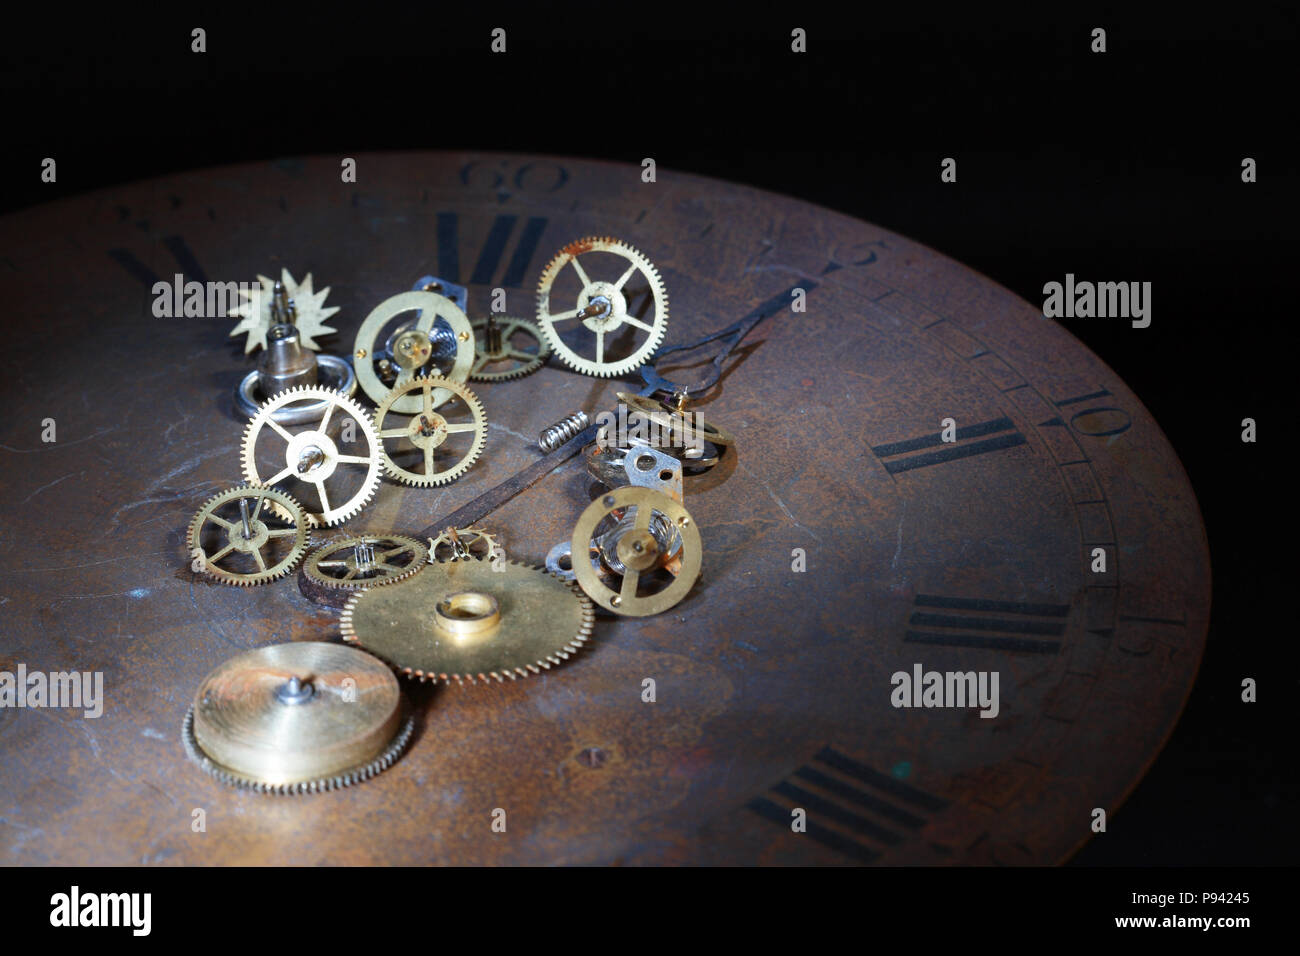 Old watch details allongé sur vintage rusty cadran d'horloge sur fond sombre Banque D'Images